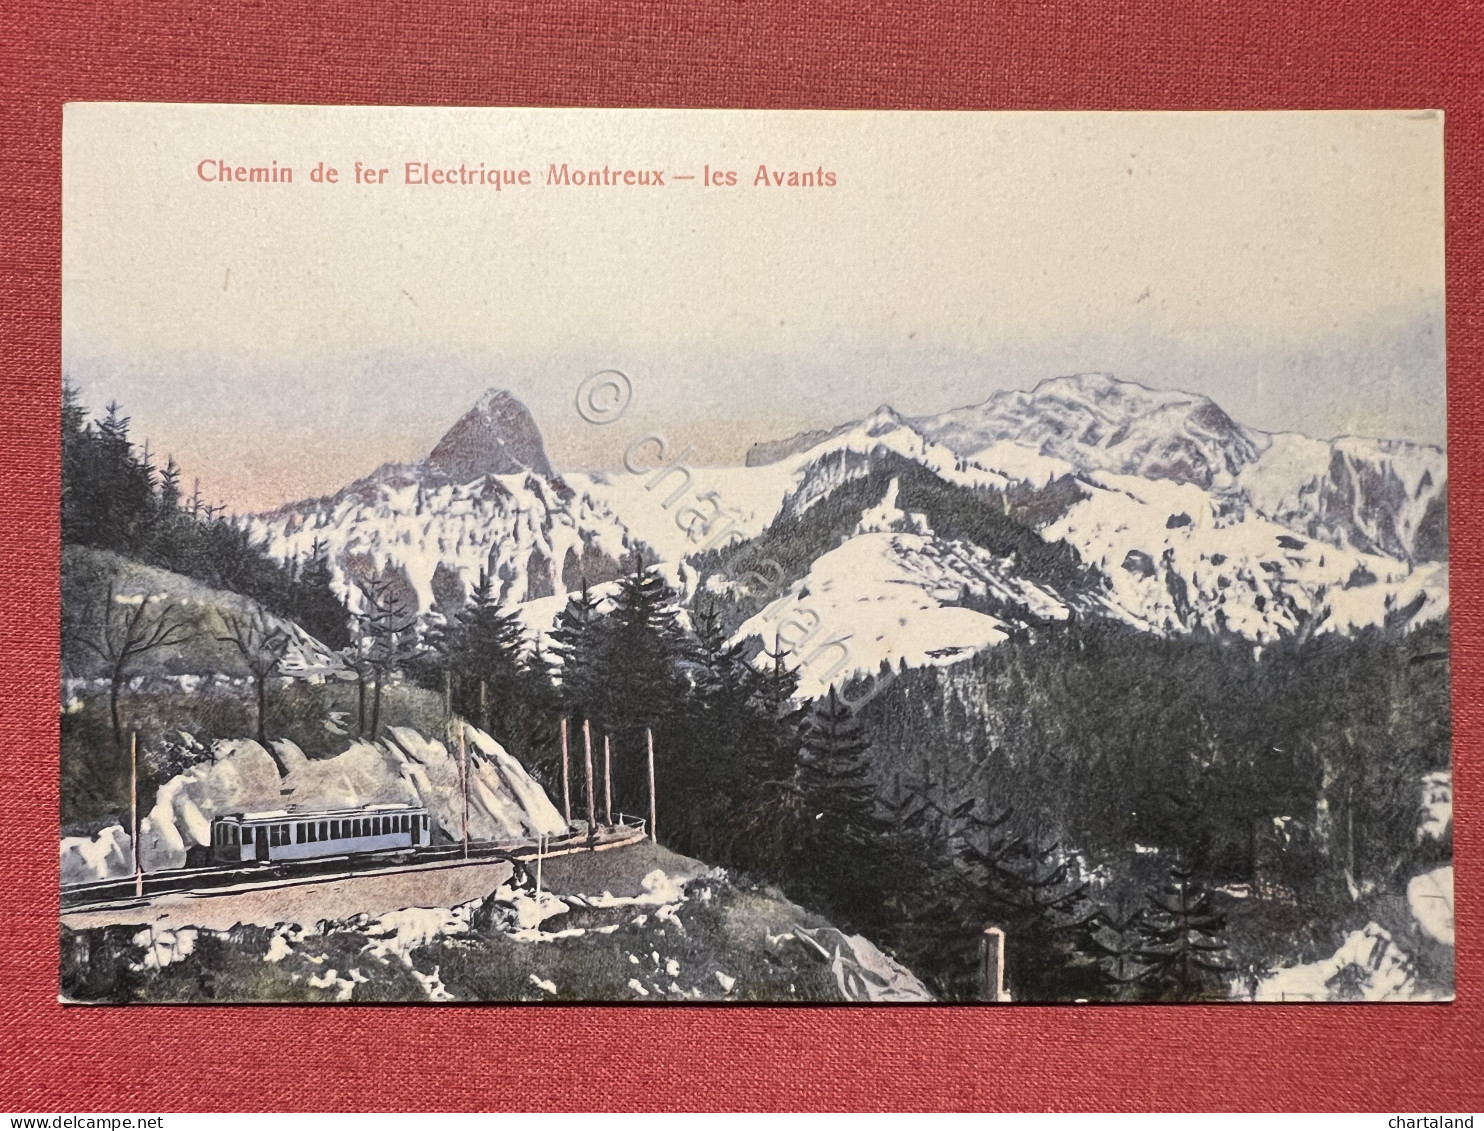 Cartolina - Chemin De Fer Electrique Montreux - Les Avants - 1920 Ca. - Non Classificati